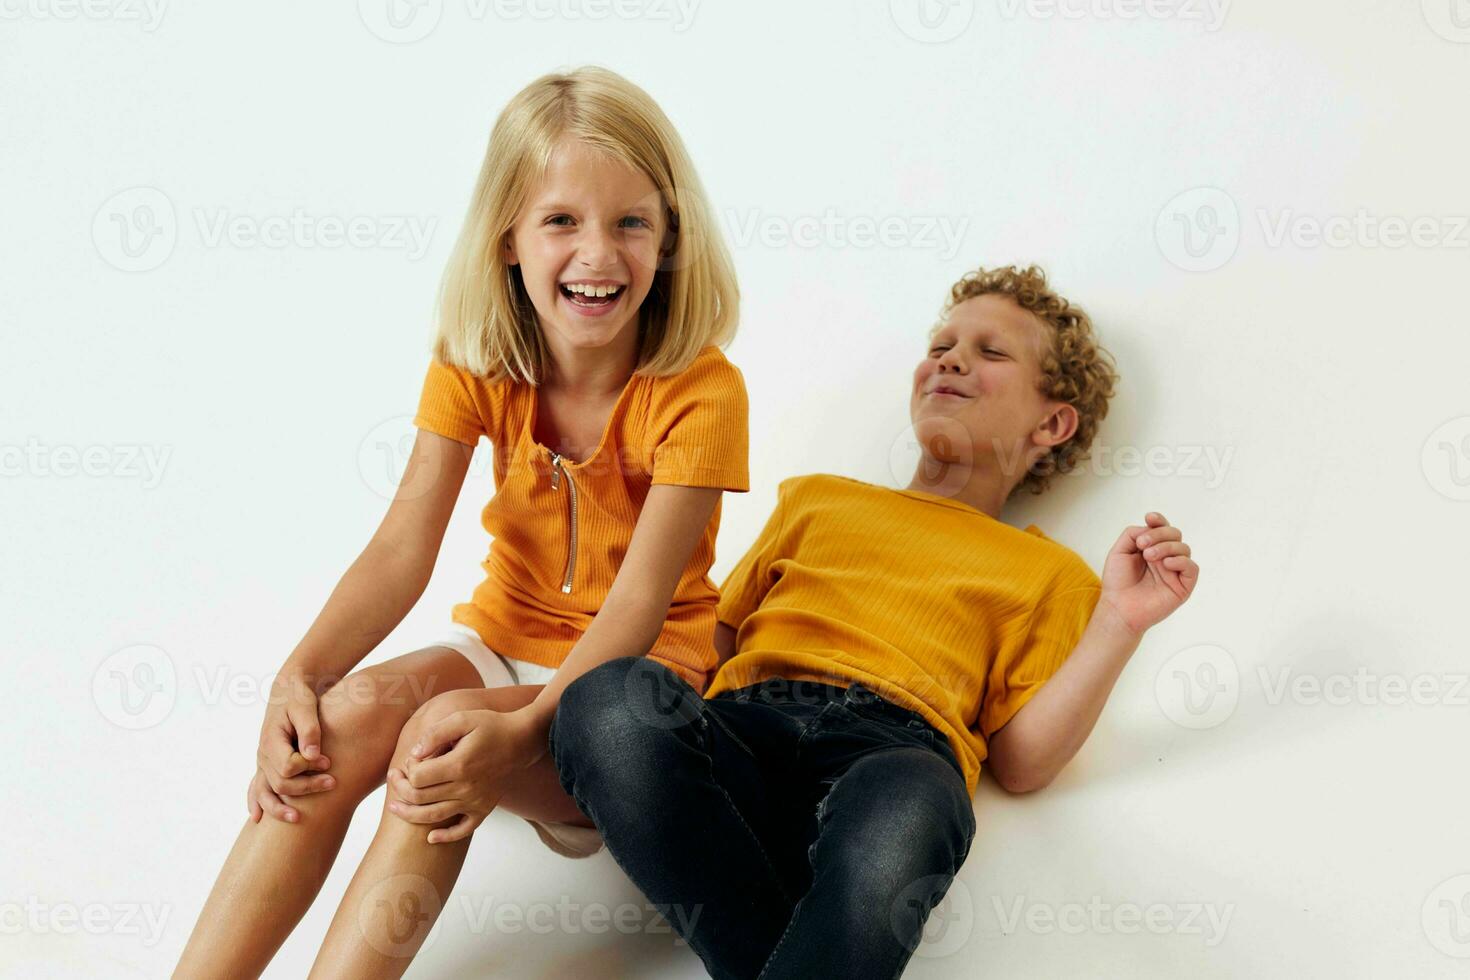 alegre niños casual vestir juegos divertido juntos posando emociones pelea aislado antecedentes inalterado foto